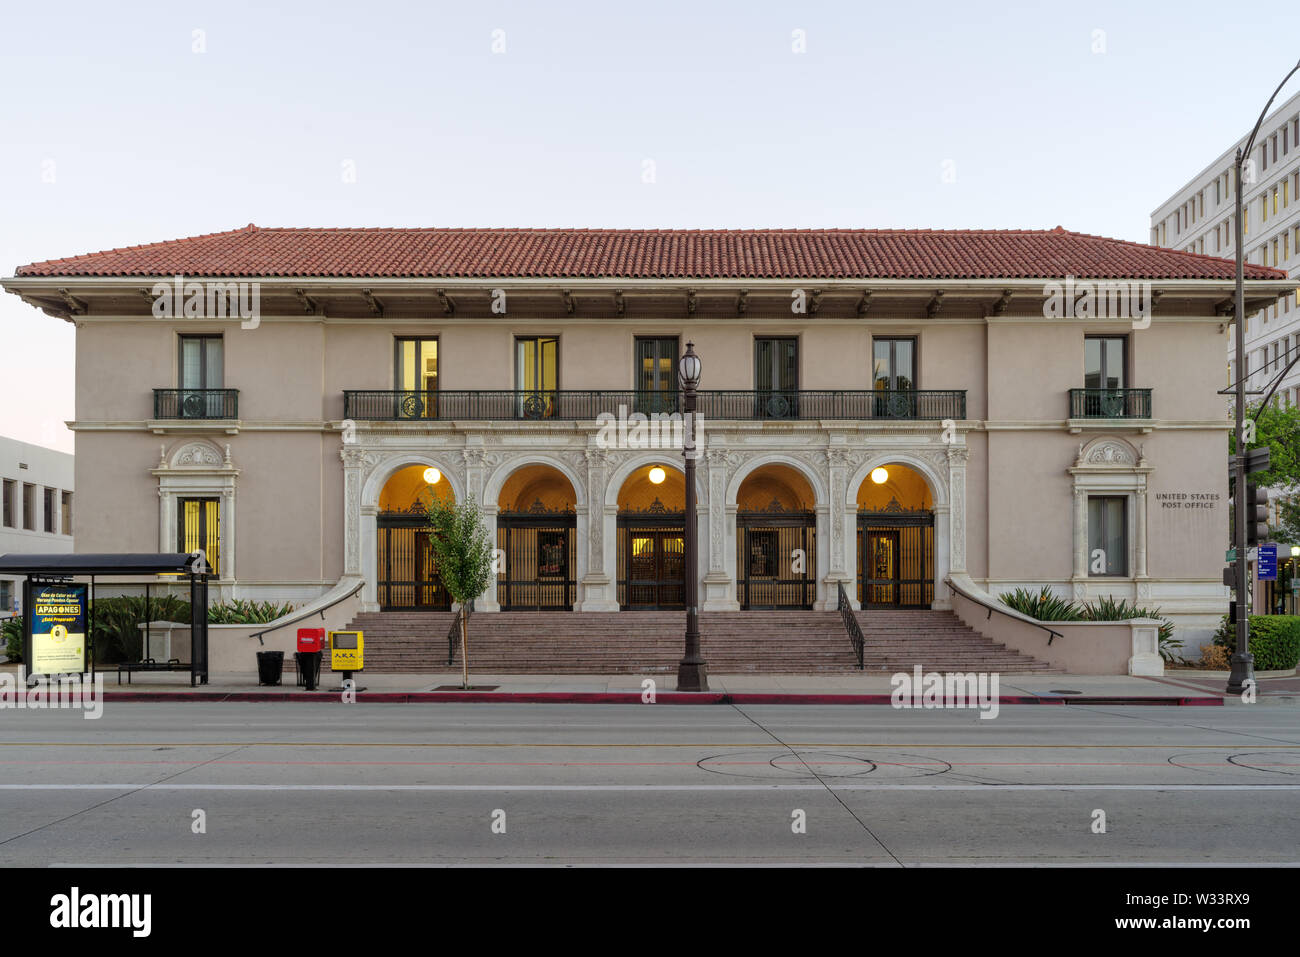 Image du bureau de poste des États-Unis sur Colorado Boulevard, ville de Pasadena, Californie du Sud. Banque D'Images